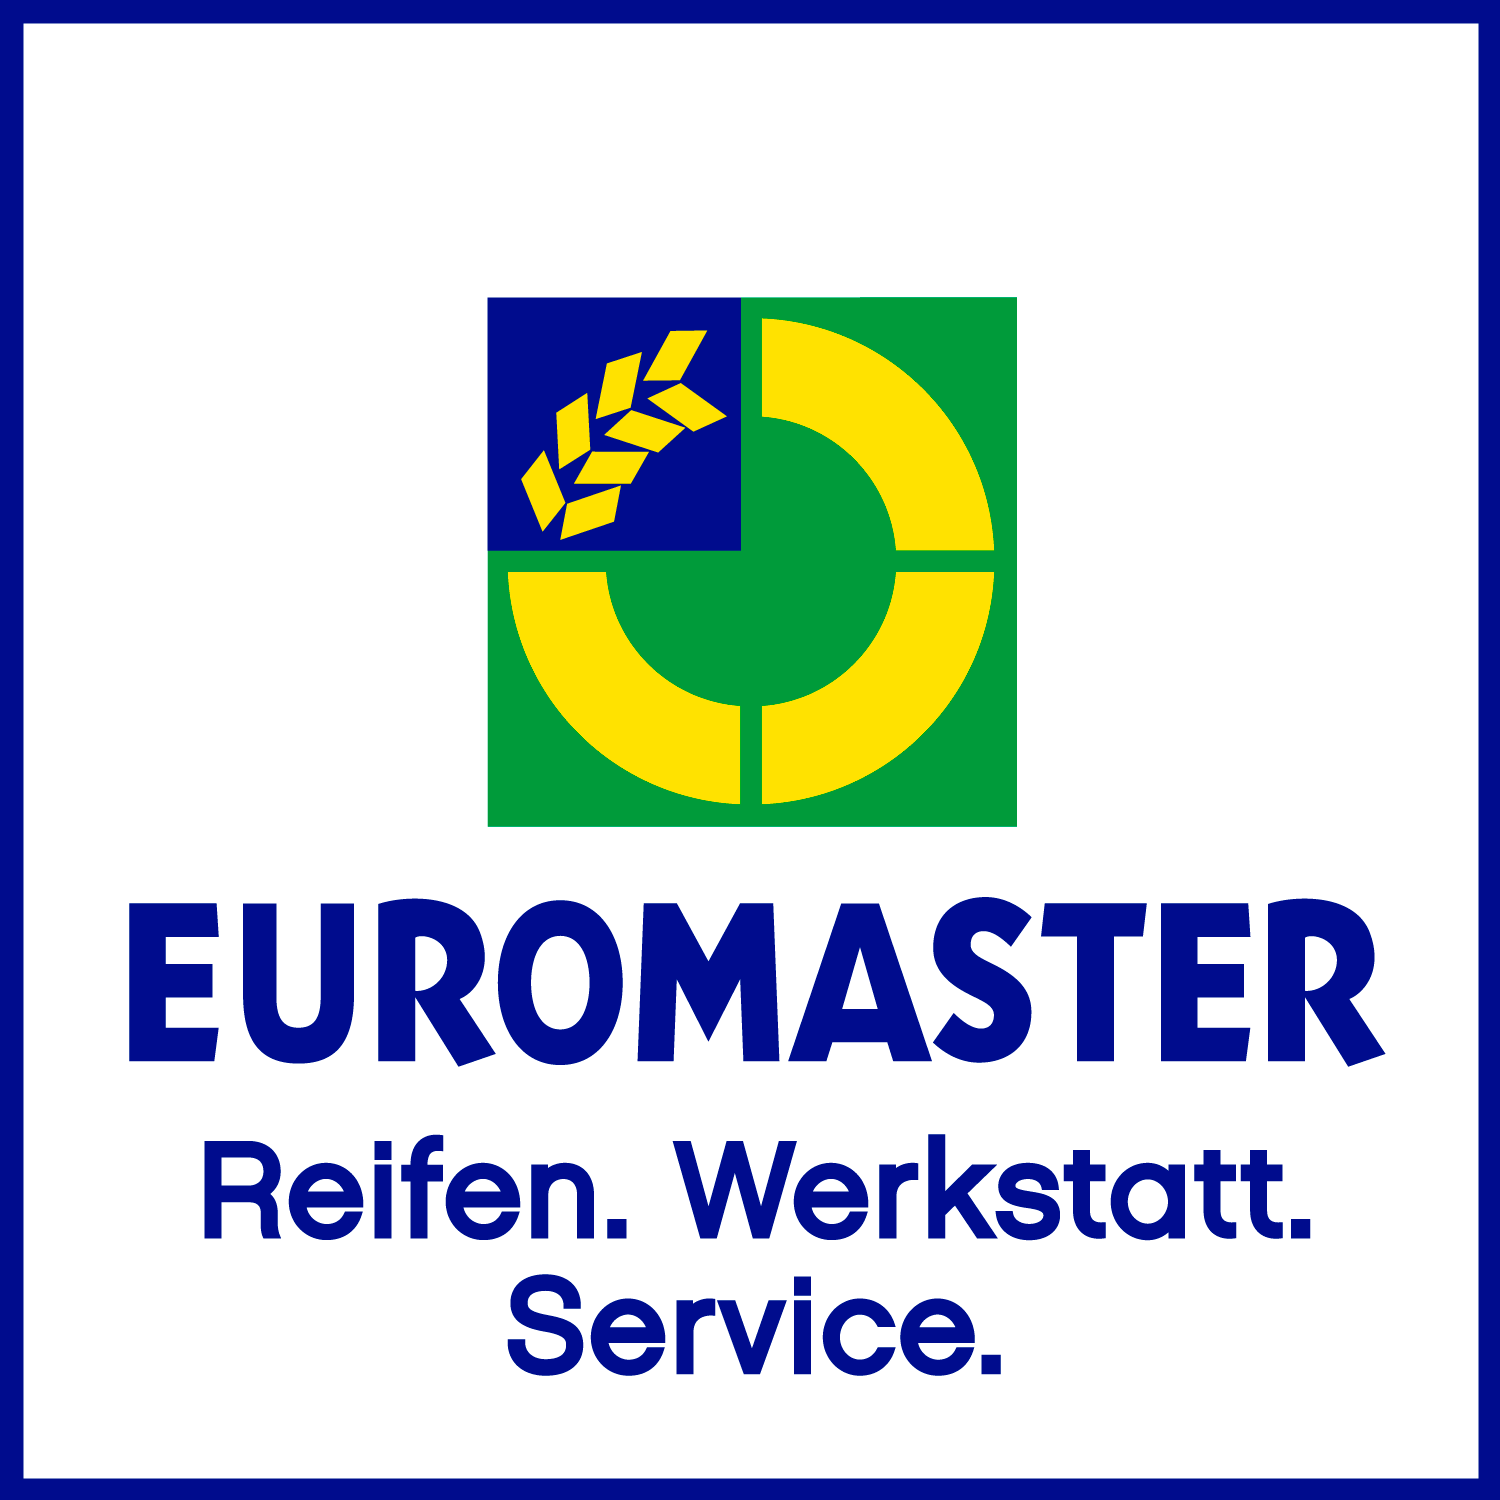 Euromaster Logo